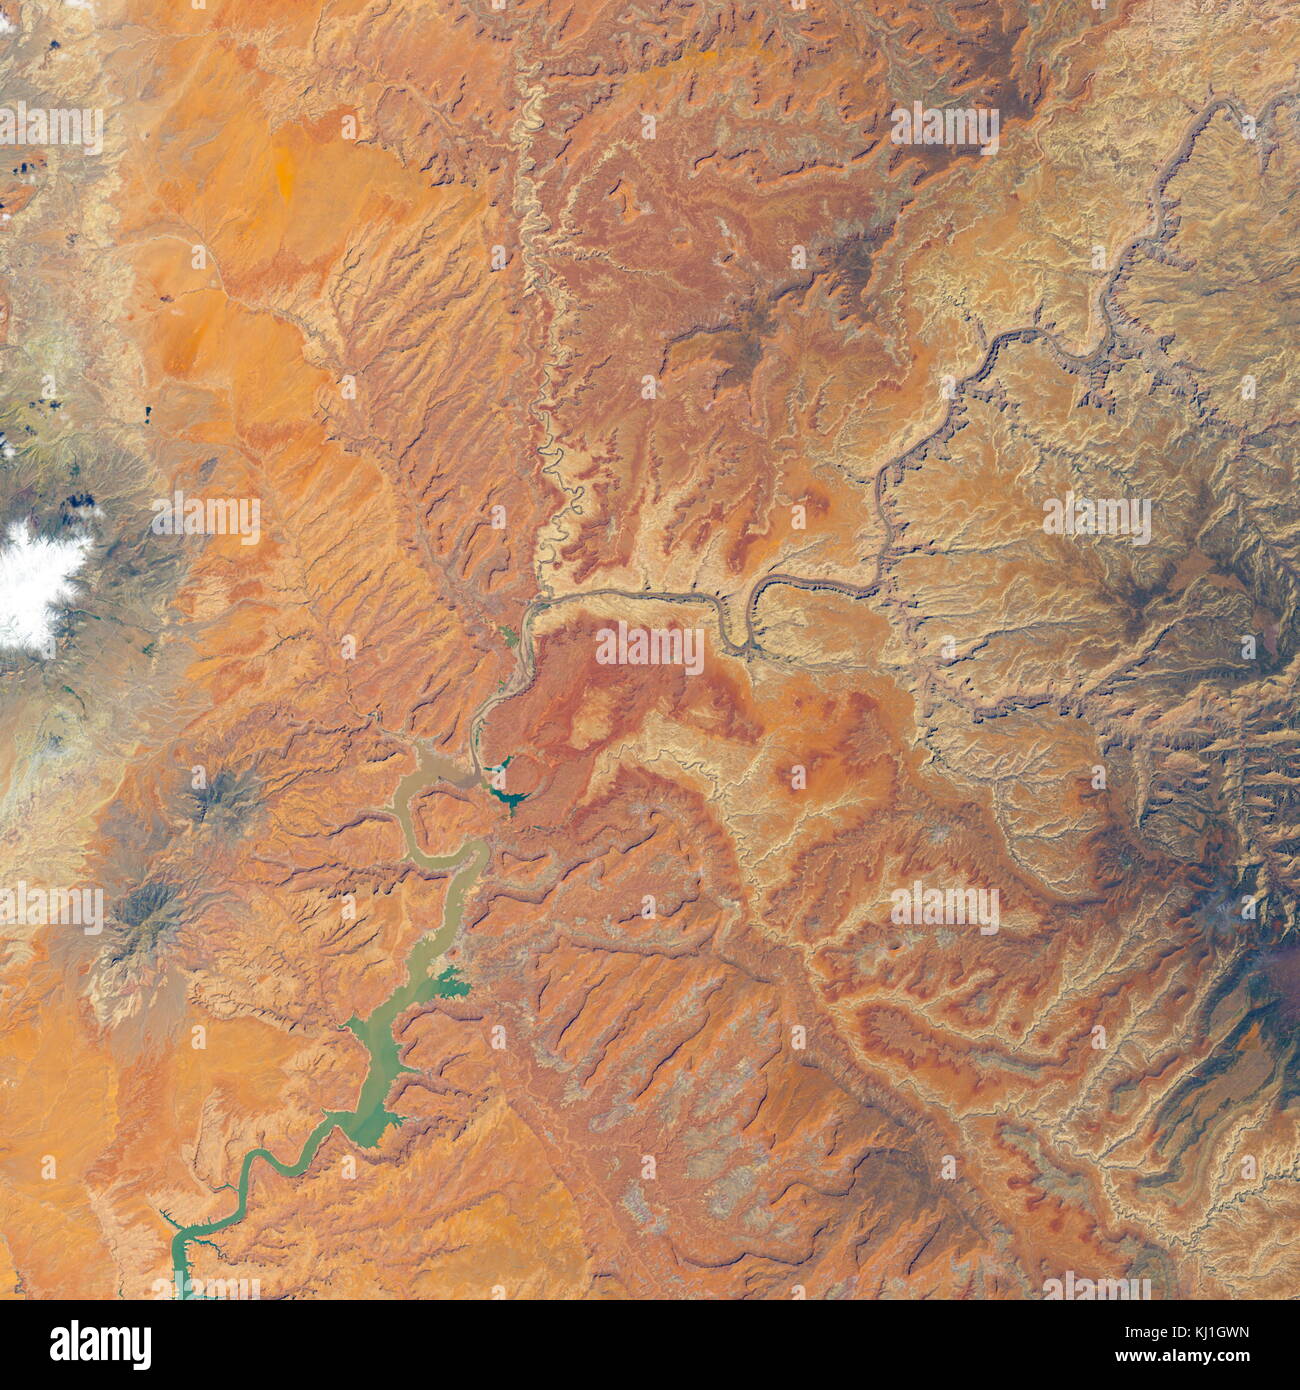 Lake Powell, est un réservoir sur la rivière Colorado, chevauchant la frontière entre l'Utah et l'Arizona (la plupart d'elle, avec pont en arc-en-ciel, est dans l'Utah). C'est le deuxième plus grand réservoir de capacité maximale de l'eau aux États-Unis derrière le Lac Mead. Image satellite, prises en 2014 Banque D'Images